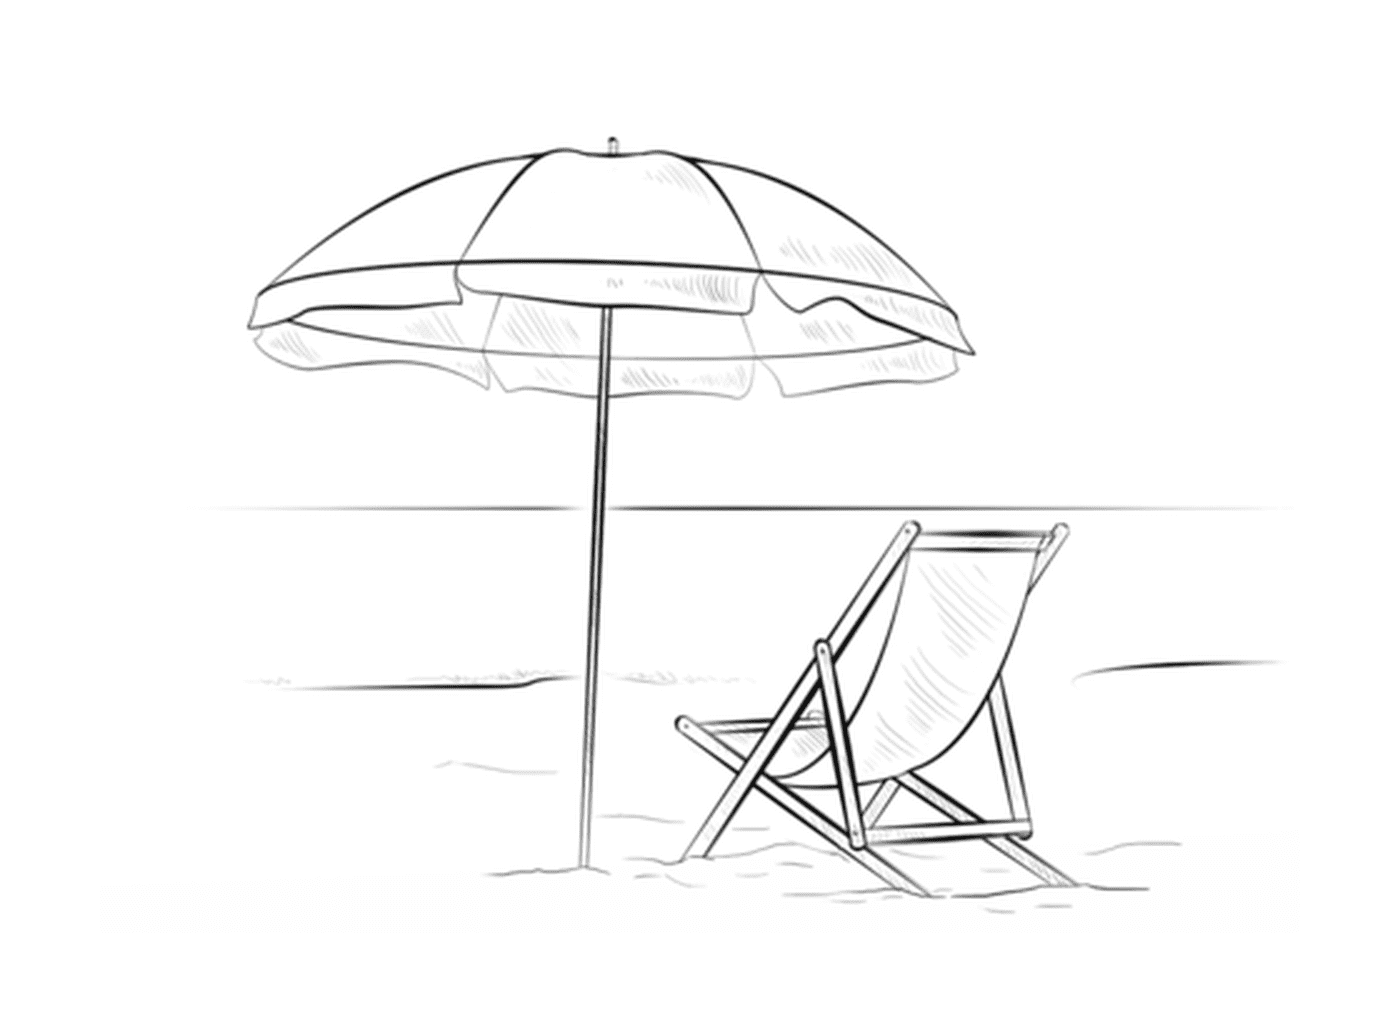  A) Парасоль с пляжным креслом во время летних каникул 